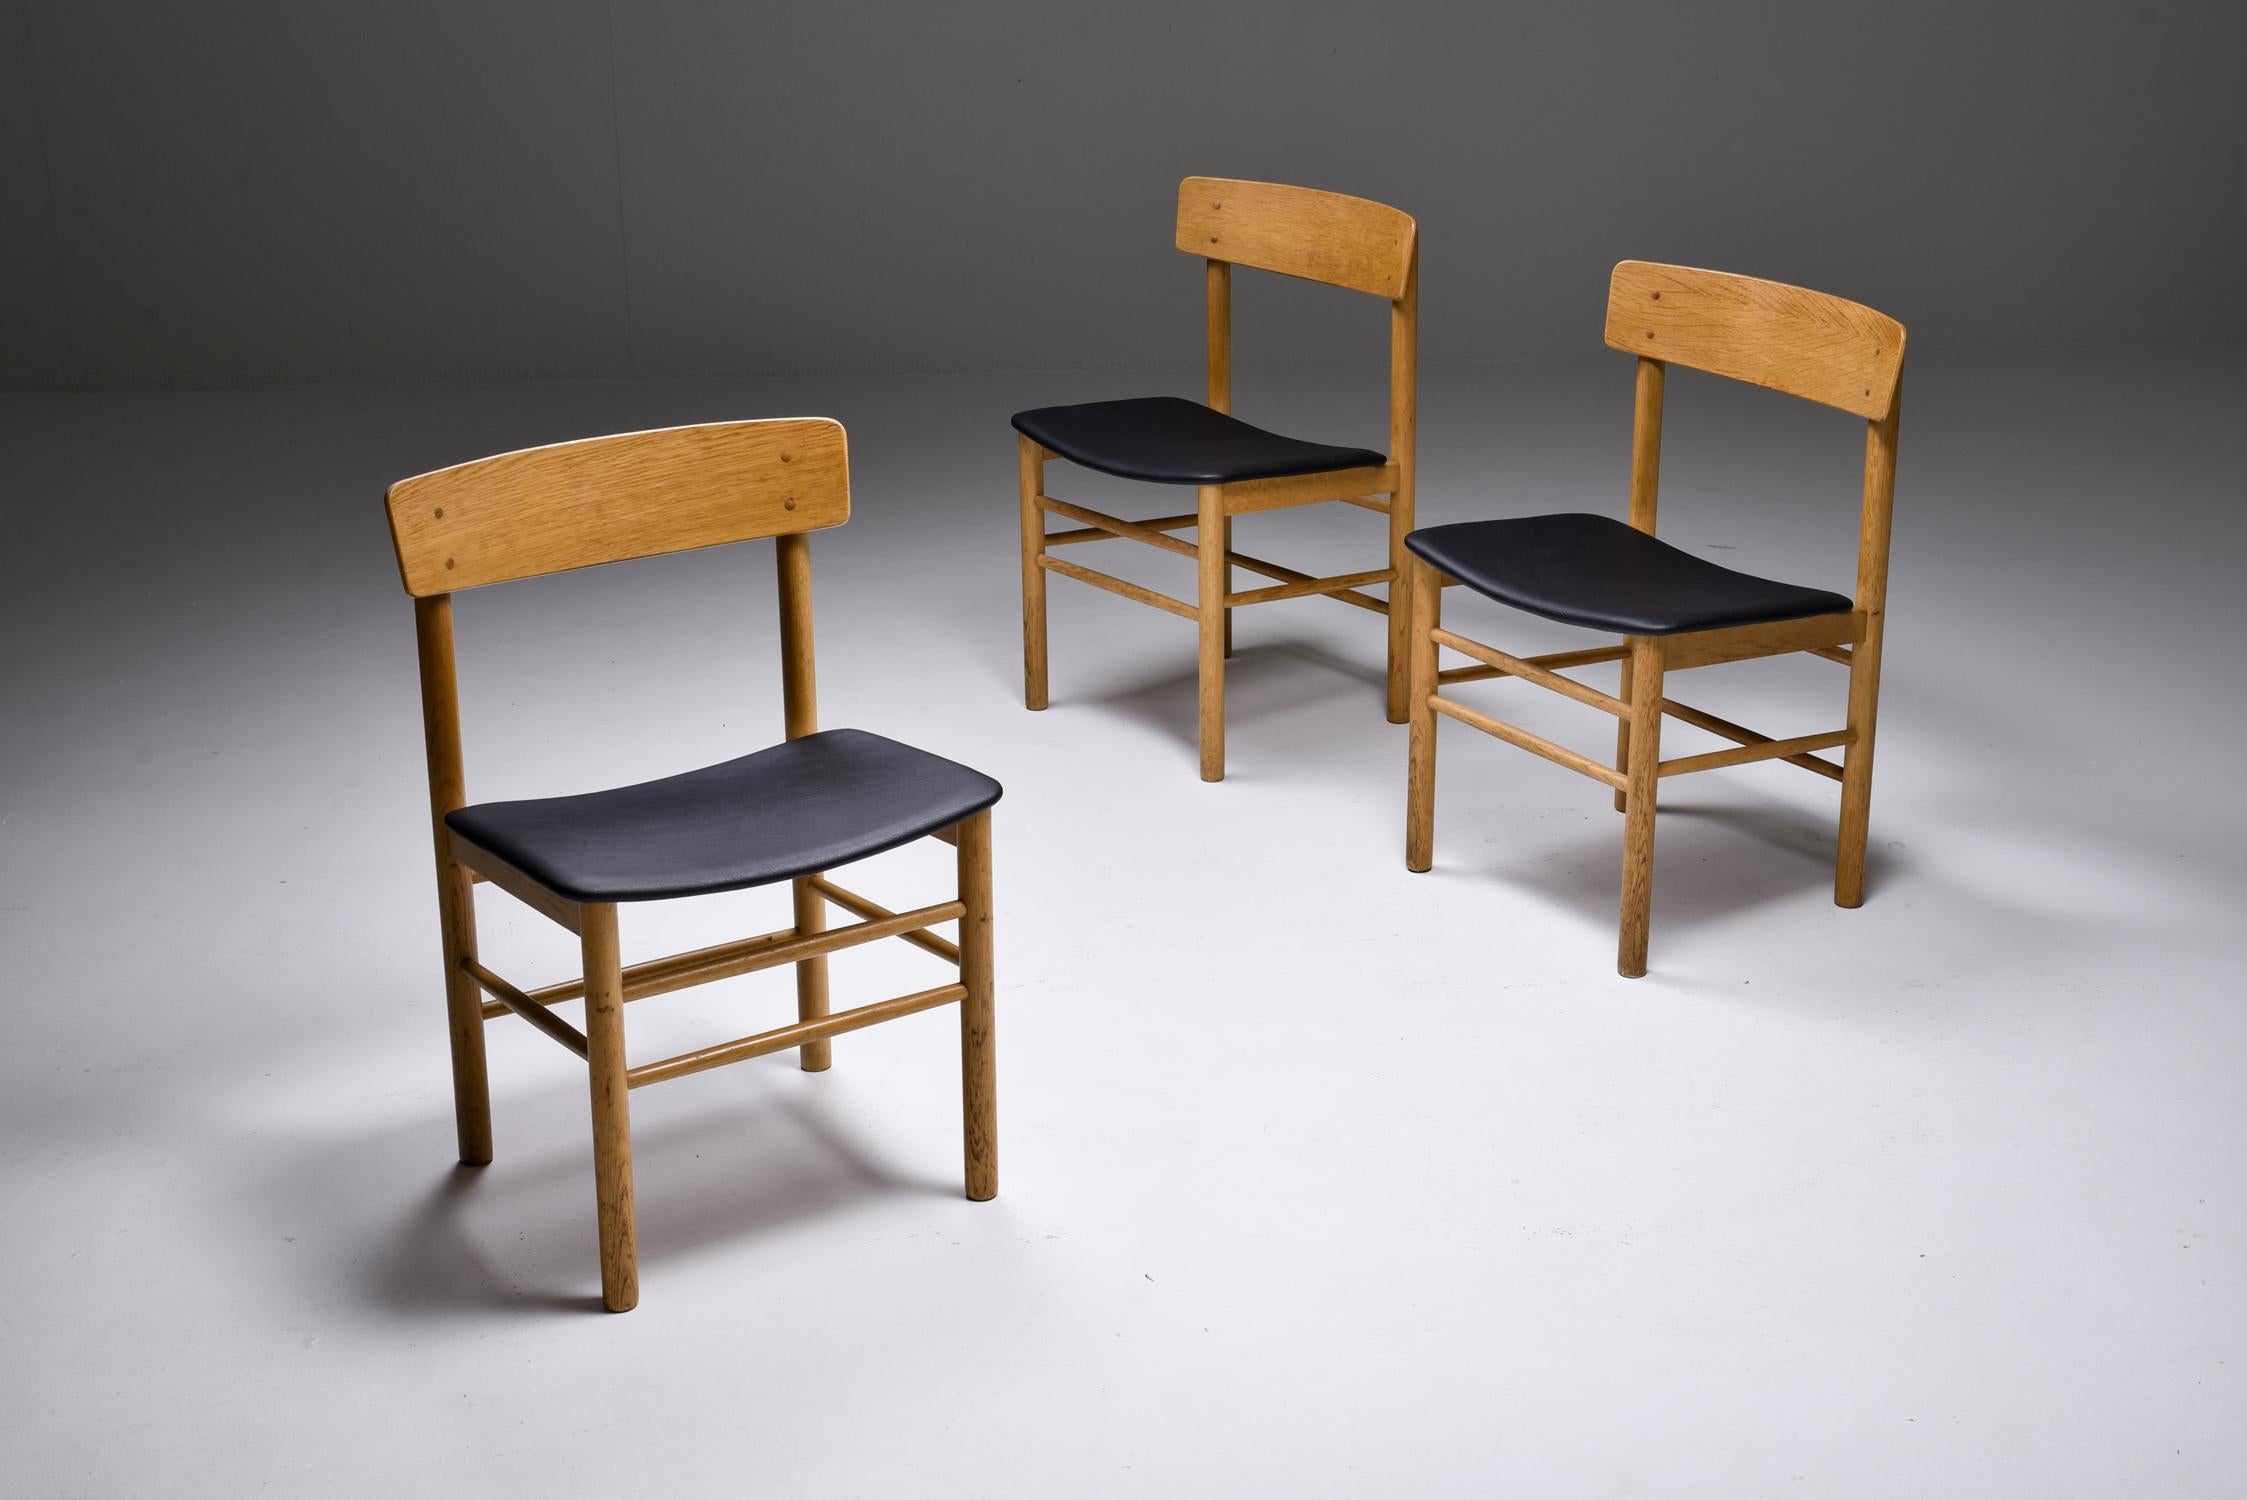 Scandinave moderne, Børge Mogensen, Fredericia Stølefabrik, Danemark, 1956.

Chaises de salle à manger danoises modernes en chêne traité au savon avec sièges en cuir. Cette chaise modèle 3236 a été conçue par Børge Mogensen en 1956 pour Fredericia